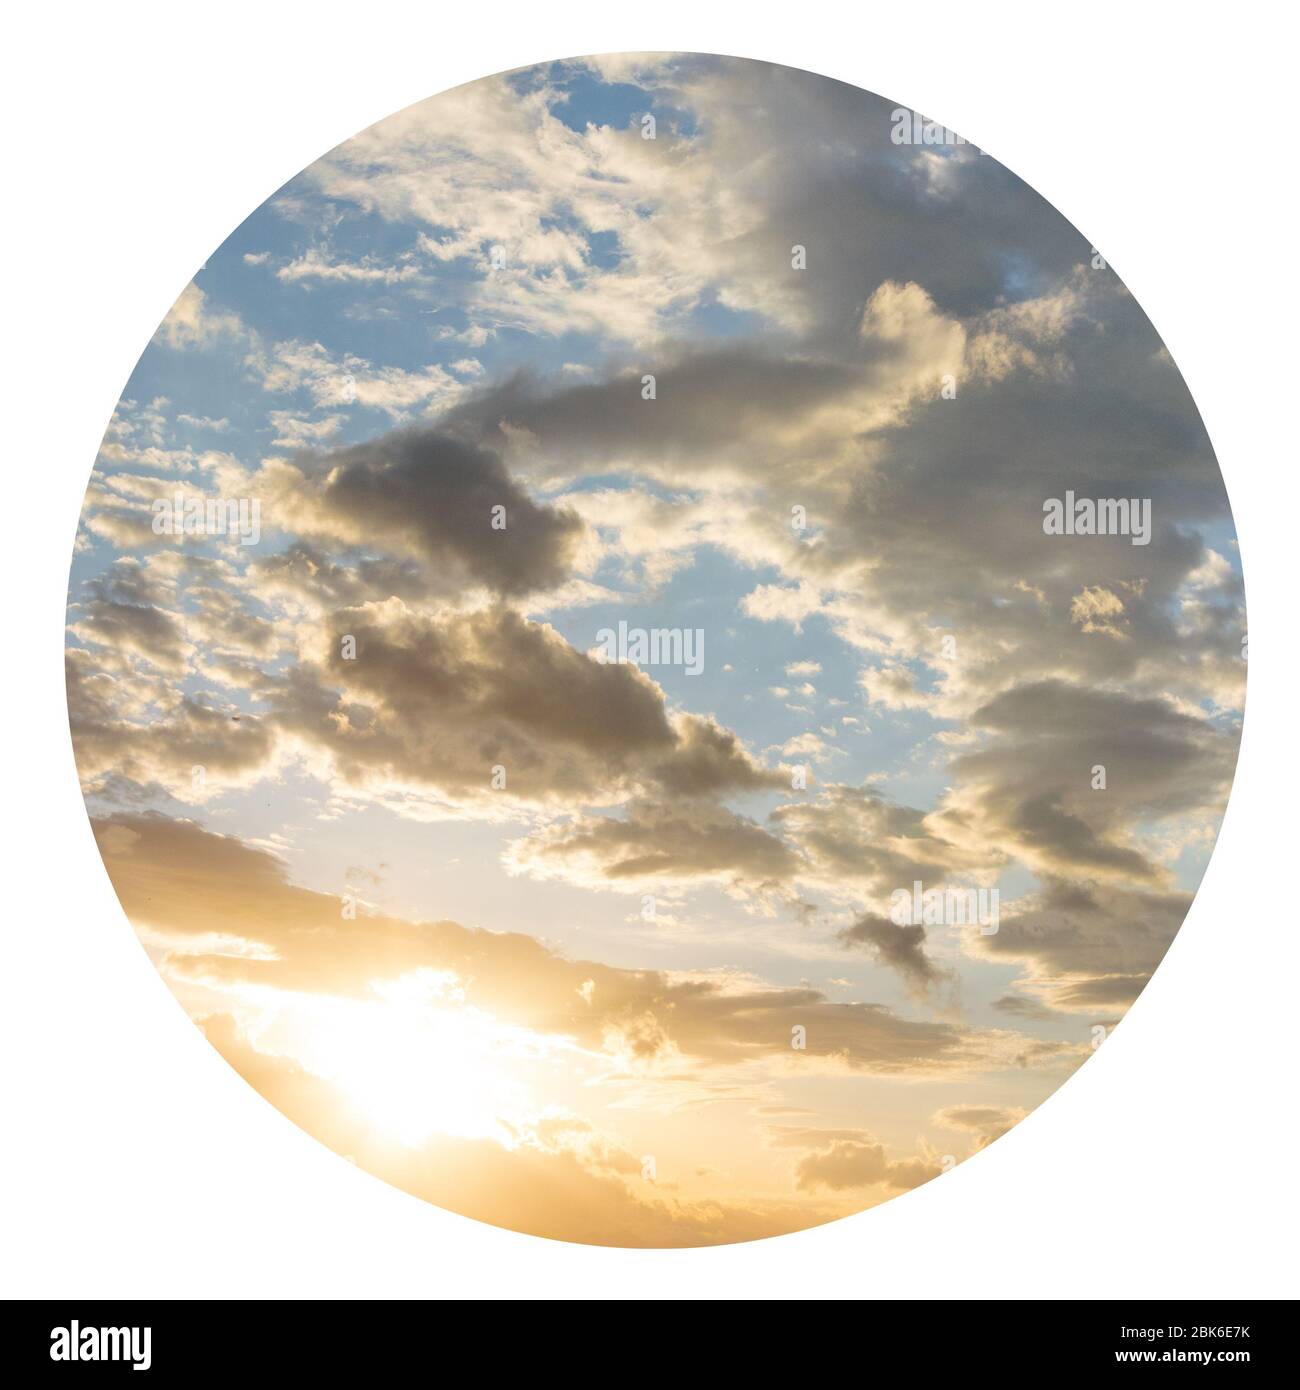 Wolkiger Skyline-Hintergrund mit grafischen Elementen. Himmlische Kulisse, idyllische Atmosphäre Stockfoto